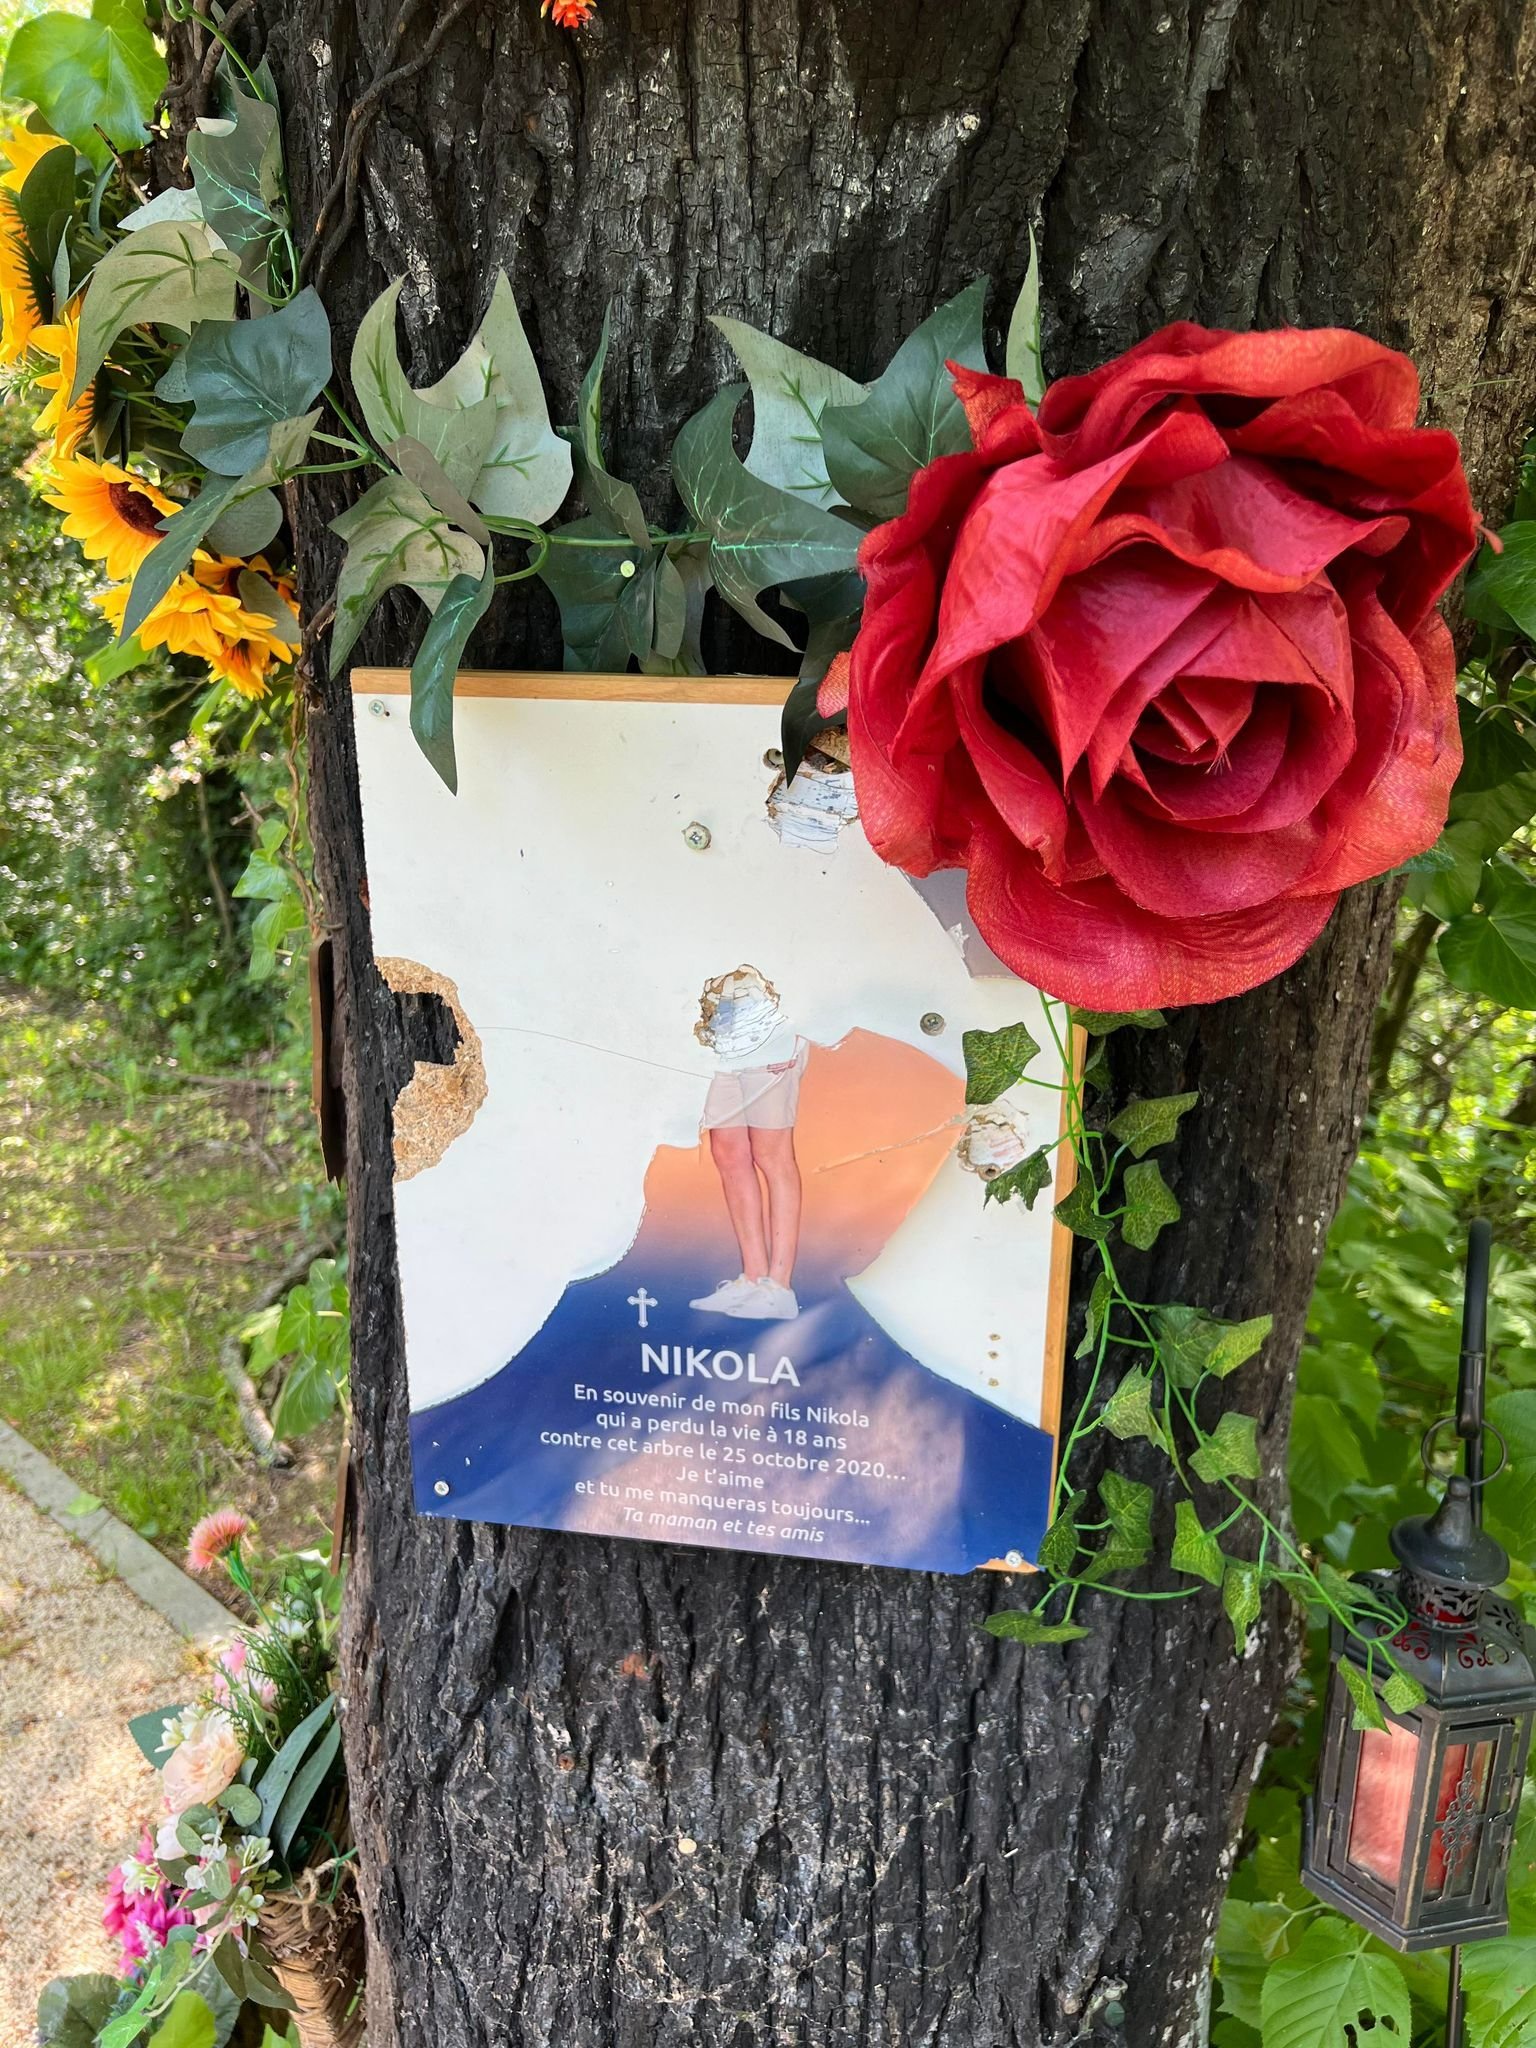 Le petit monument érigé en mémoire de Nikola, boulevard Jacques-Tête, a une nouvelle fois été vandalisée. La plaque commémorative a notamment été attaquée. (DR)